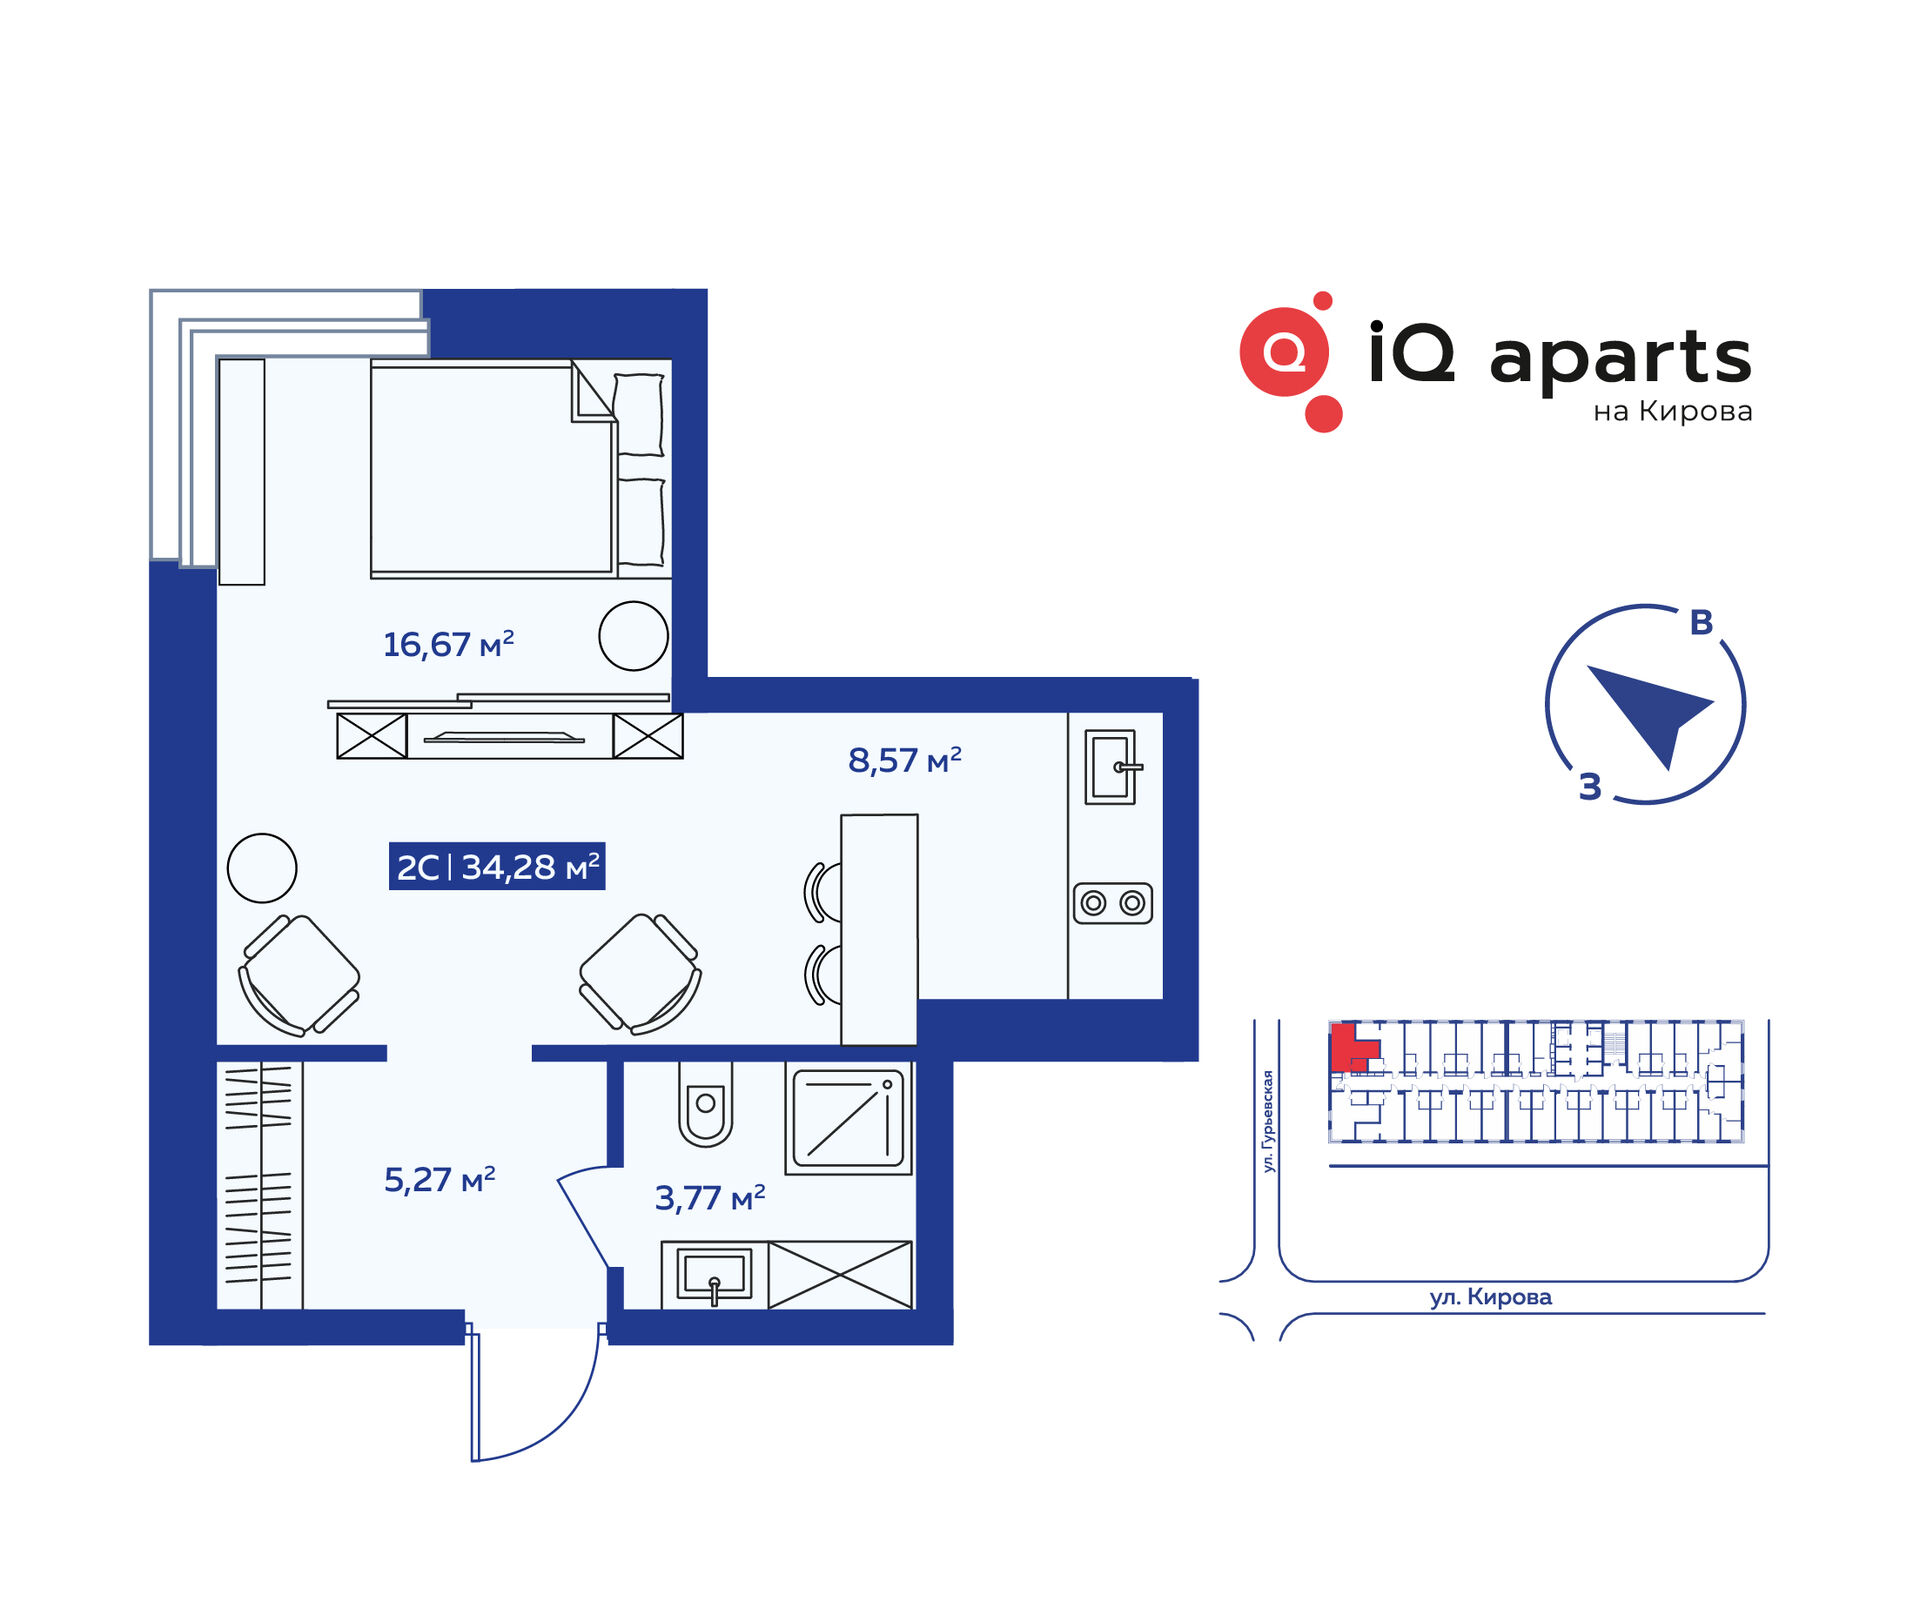 2-комнатная квартира 34.28м2 ЖК IQ Aparts